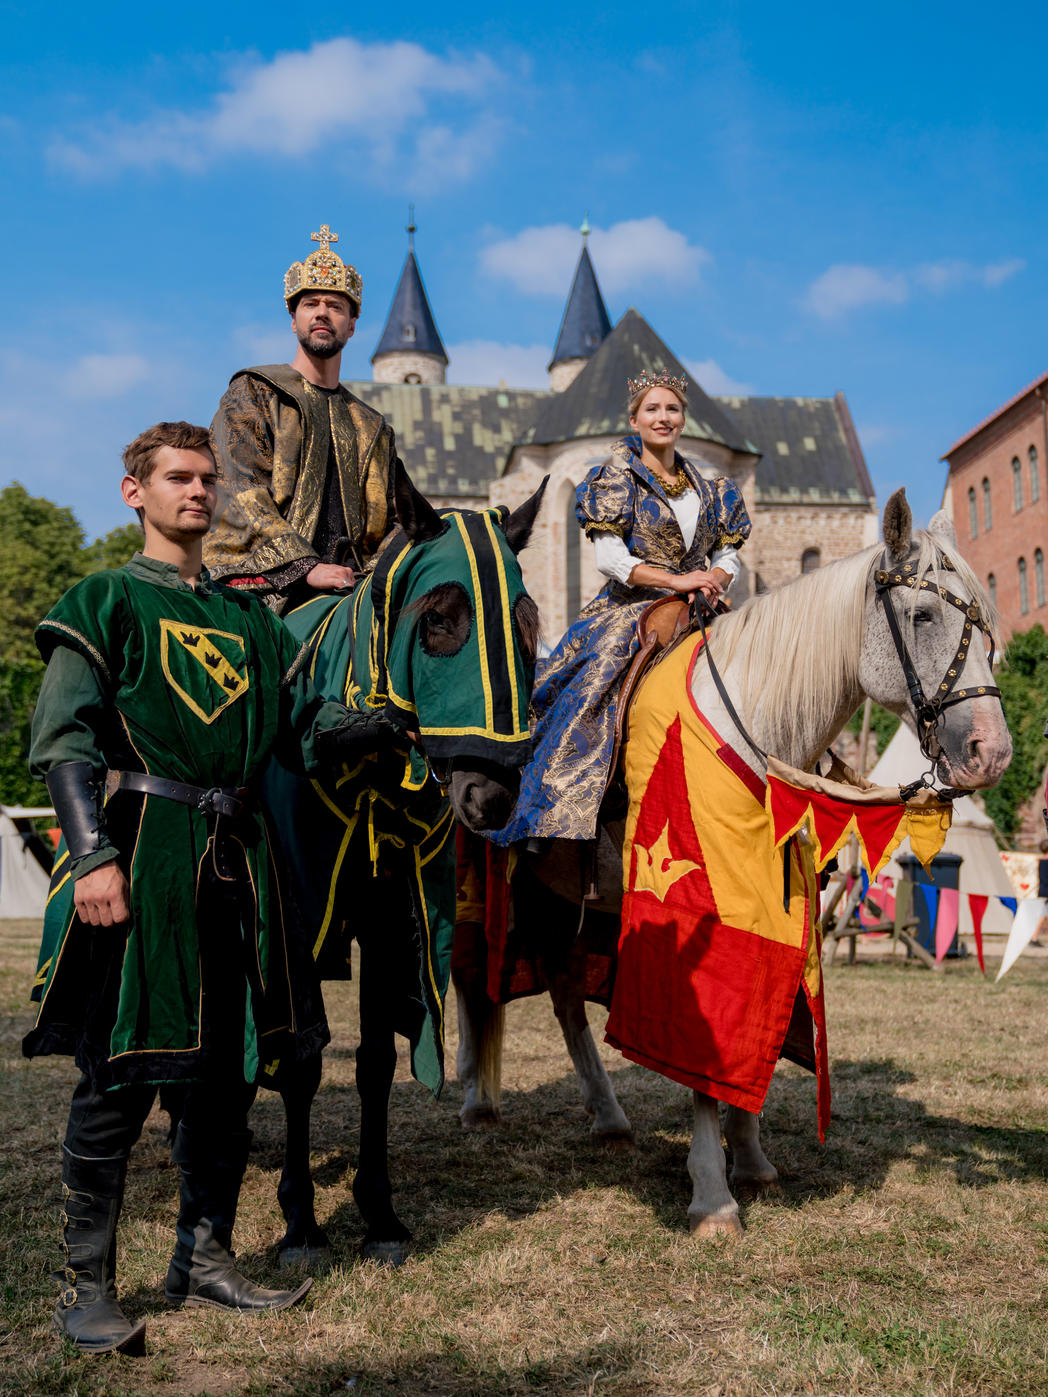 Zahlreiche Ritter werden auf ihren Pferden zum Turnier erwartet © www.AndreasLander.de